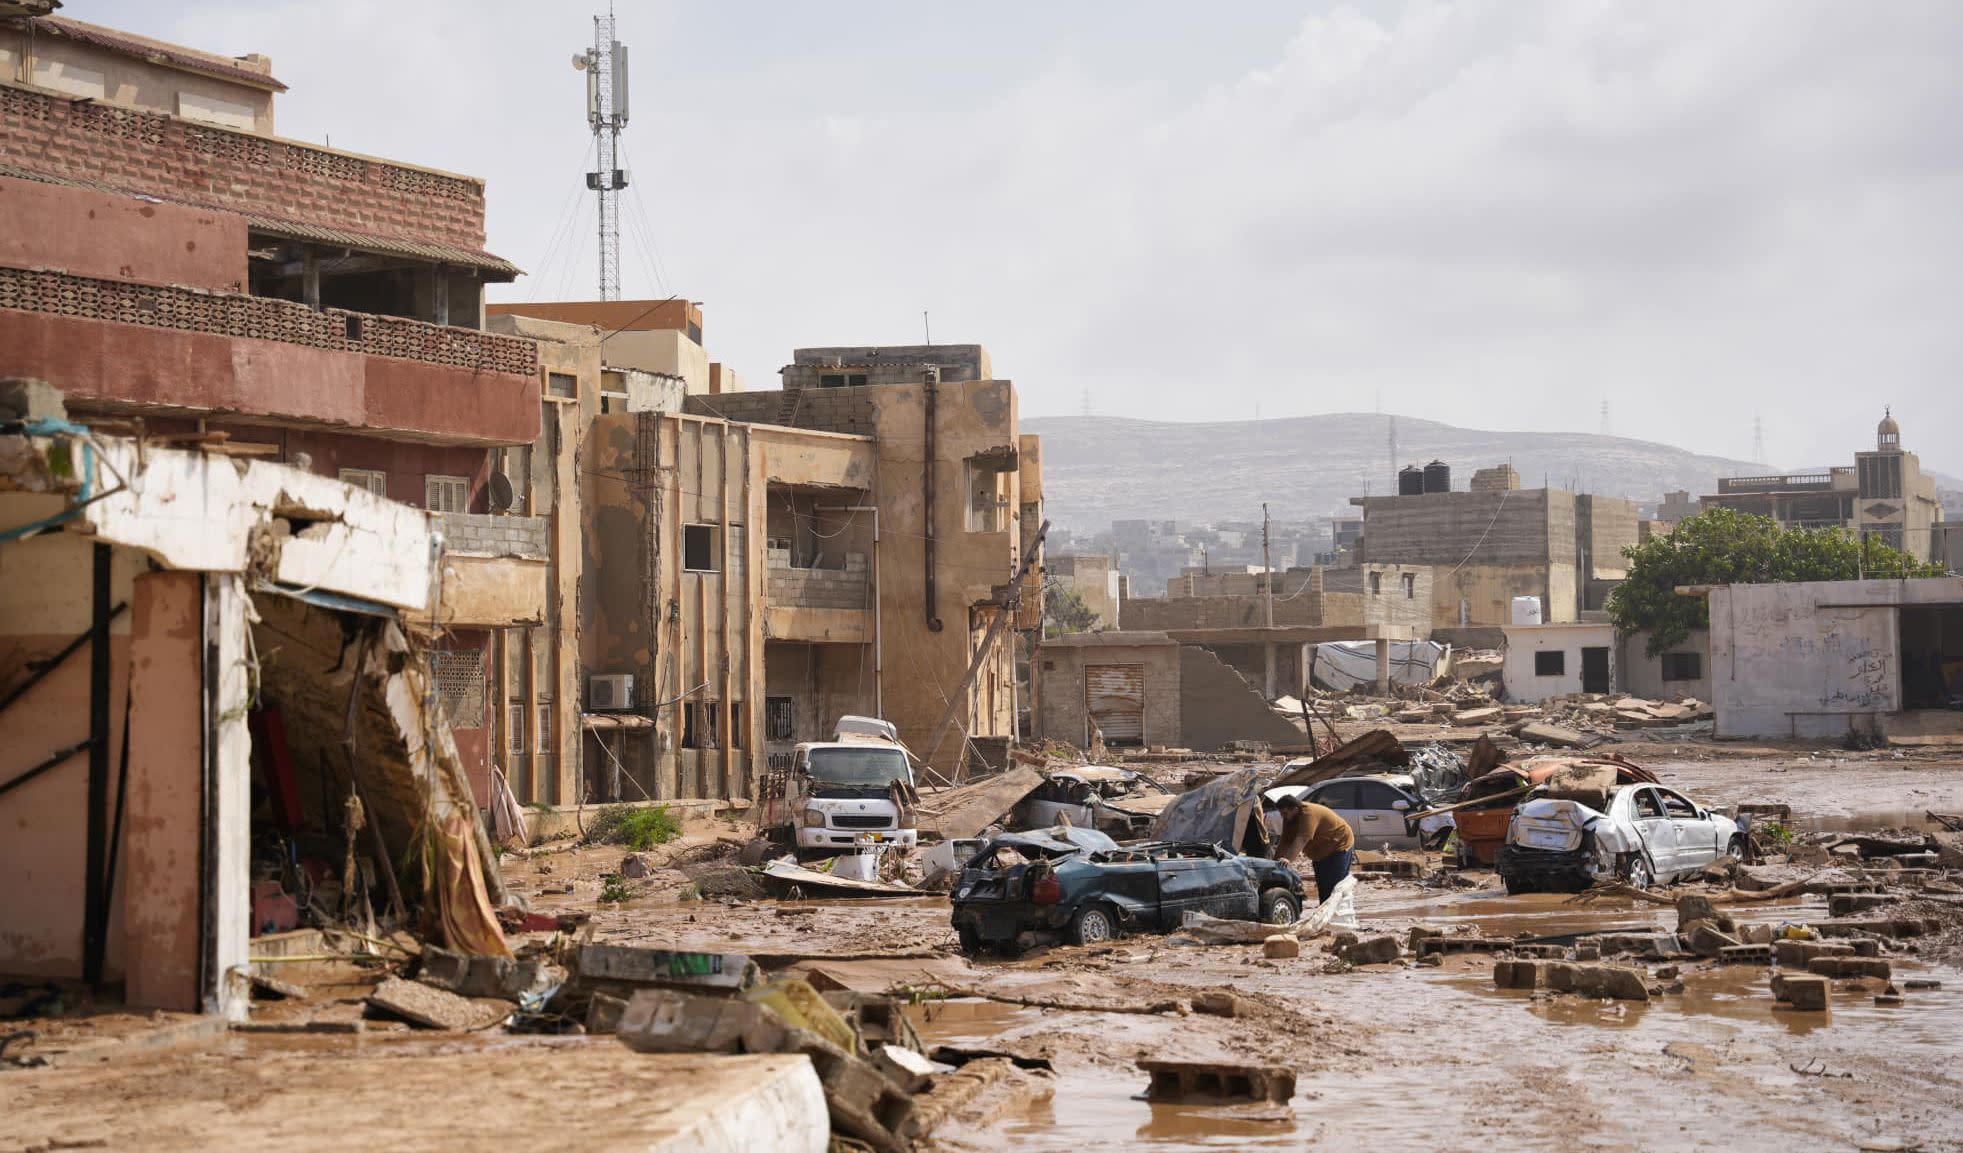 핀란드, 홍수 피해를 입은 리비아를 위한 지원 패키지 준비 중